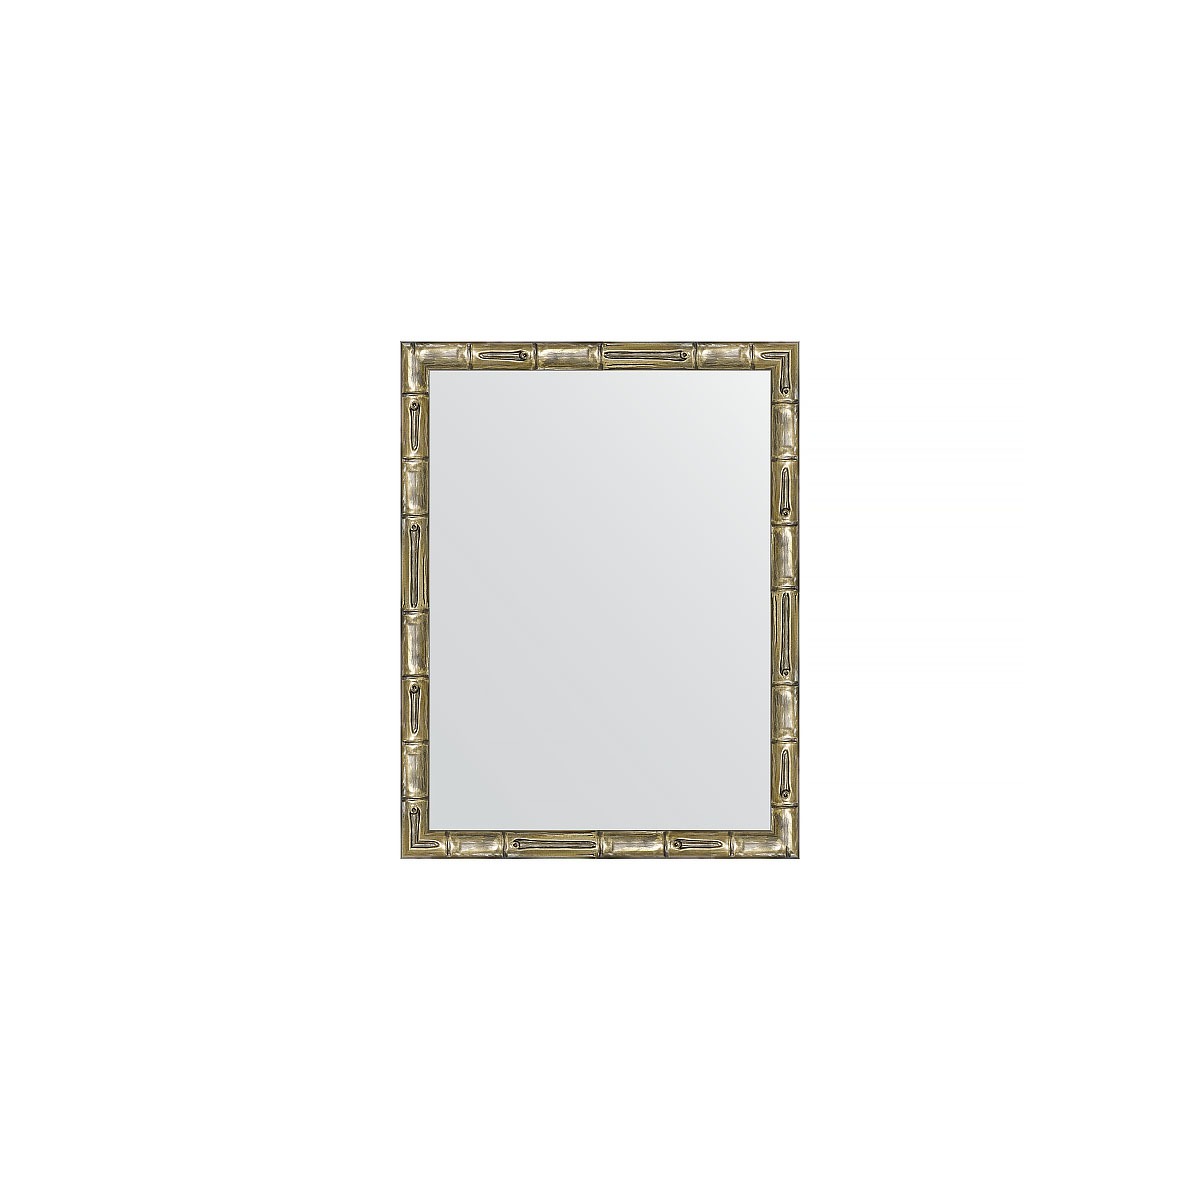 Зеркало в багетной раме Evoform серебряный бамбук 24 мм 34х44 см зеркало с фацетом в багетной раме evoform серебряный бамбук 73 мм 58х143 см